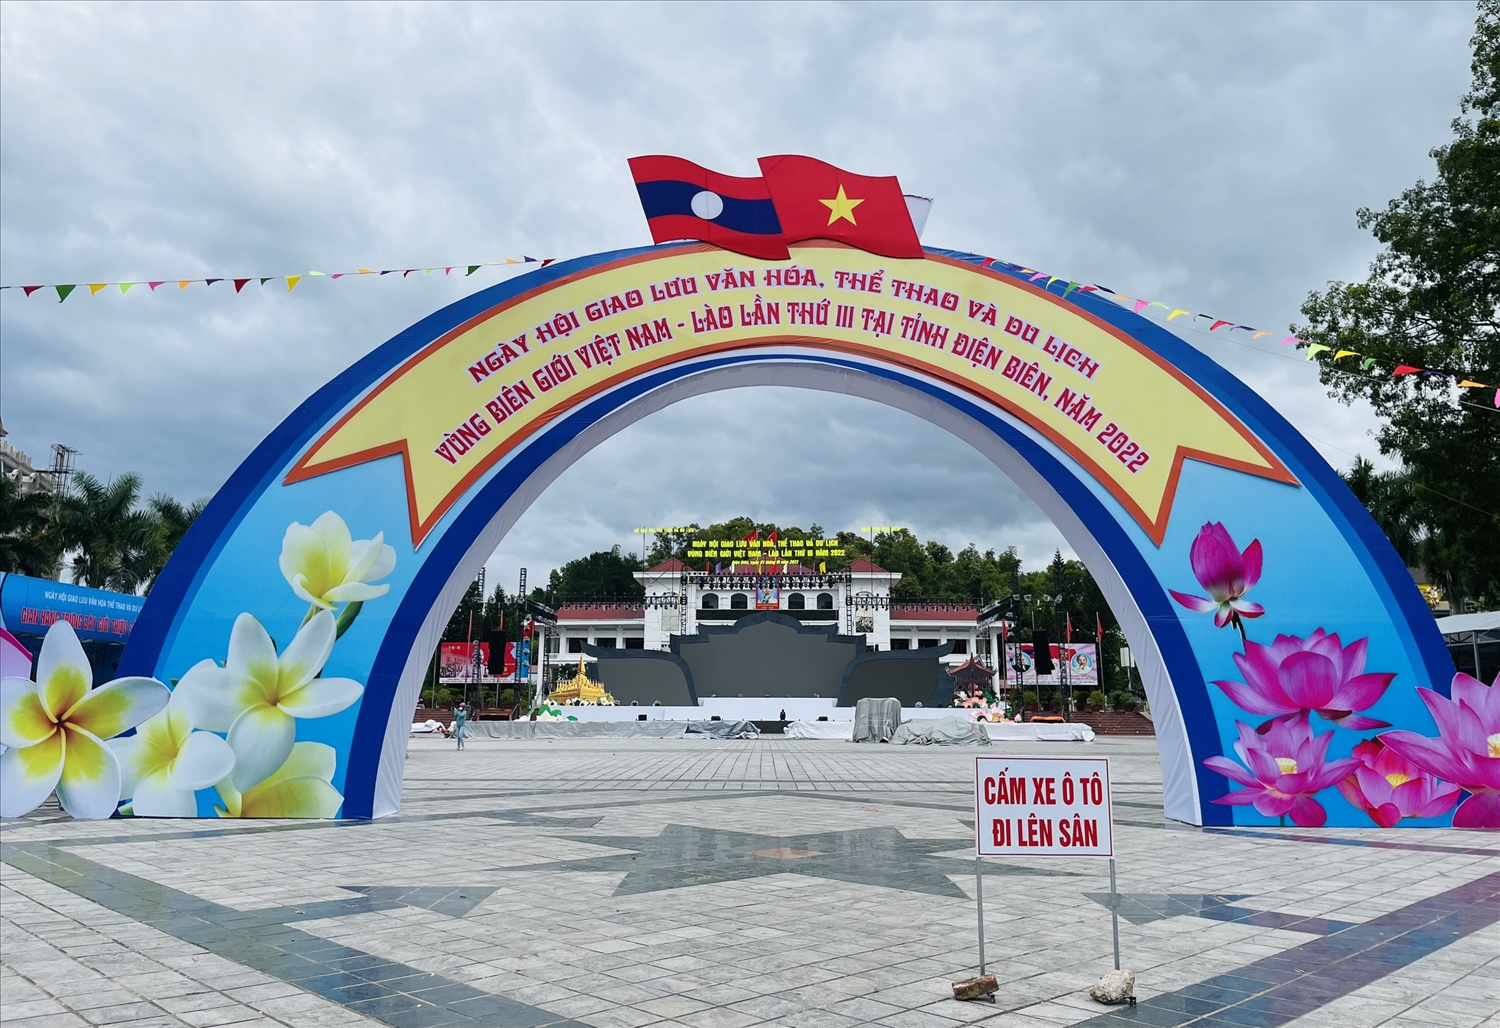 Cổng chào ngày hội giao lưu văn hóa, thể thao và du lịch vùng biên giới Việt Nam - Lào lần thứ III tại tỉnh Điện Biên